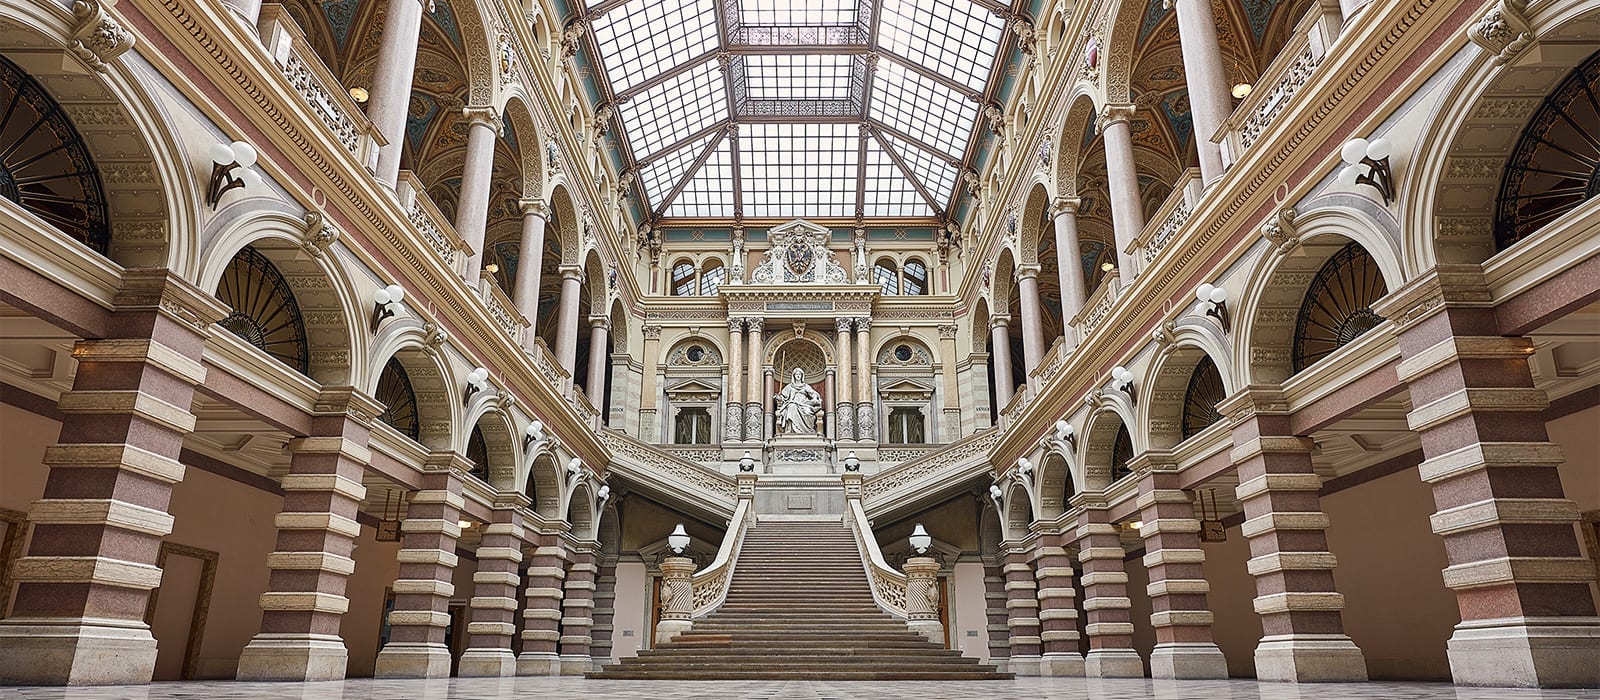 Justizpalast in Wien, Innenansicht